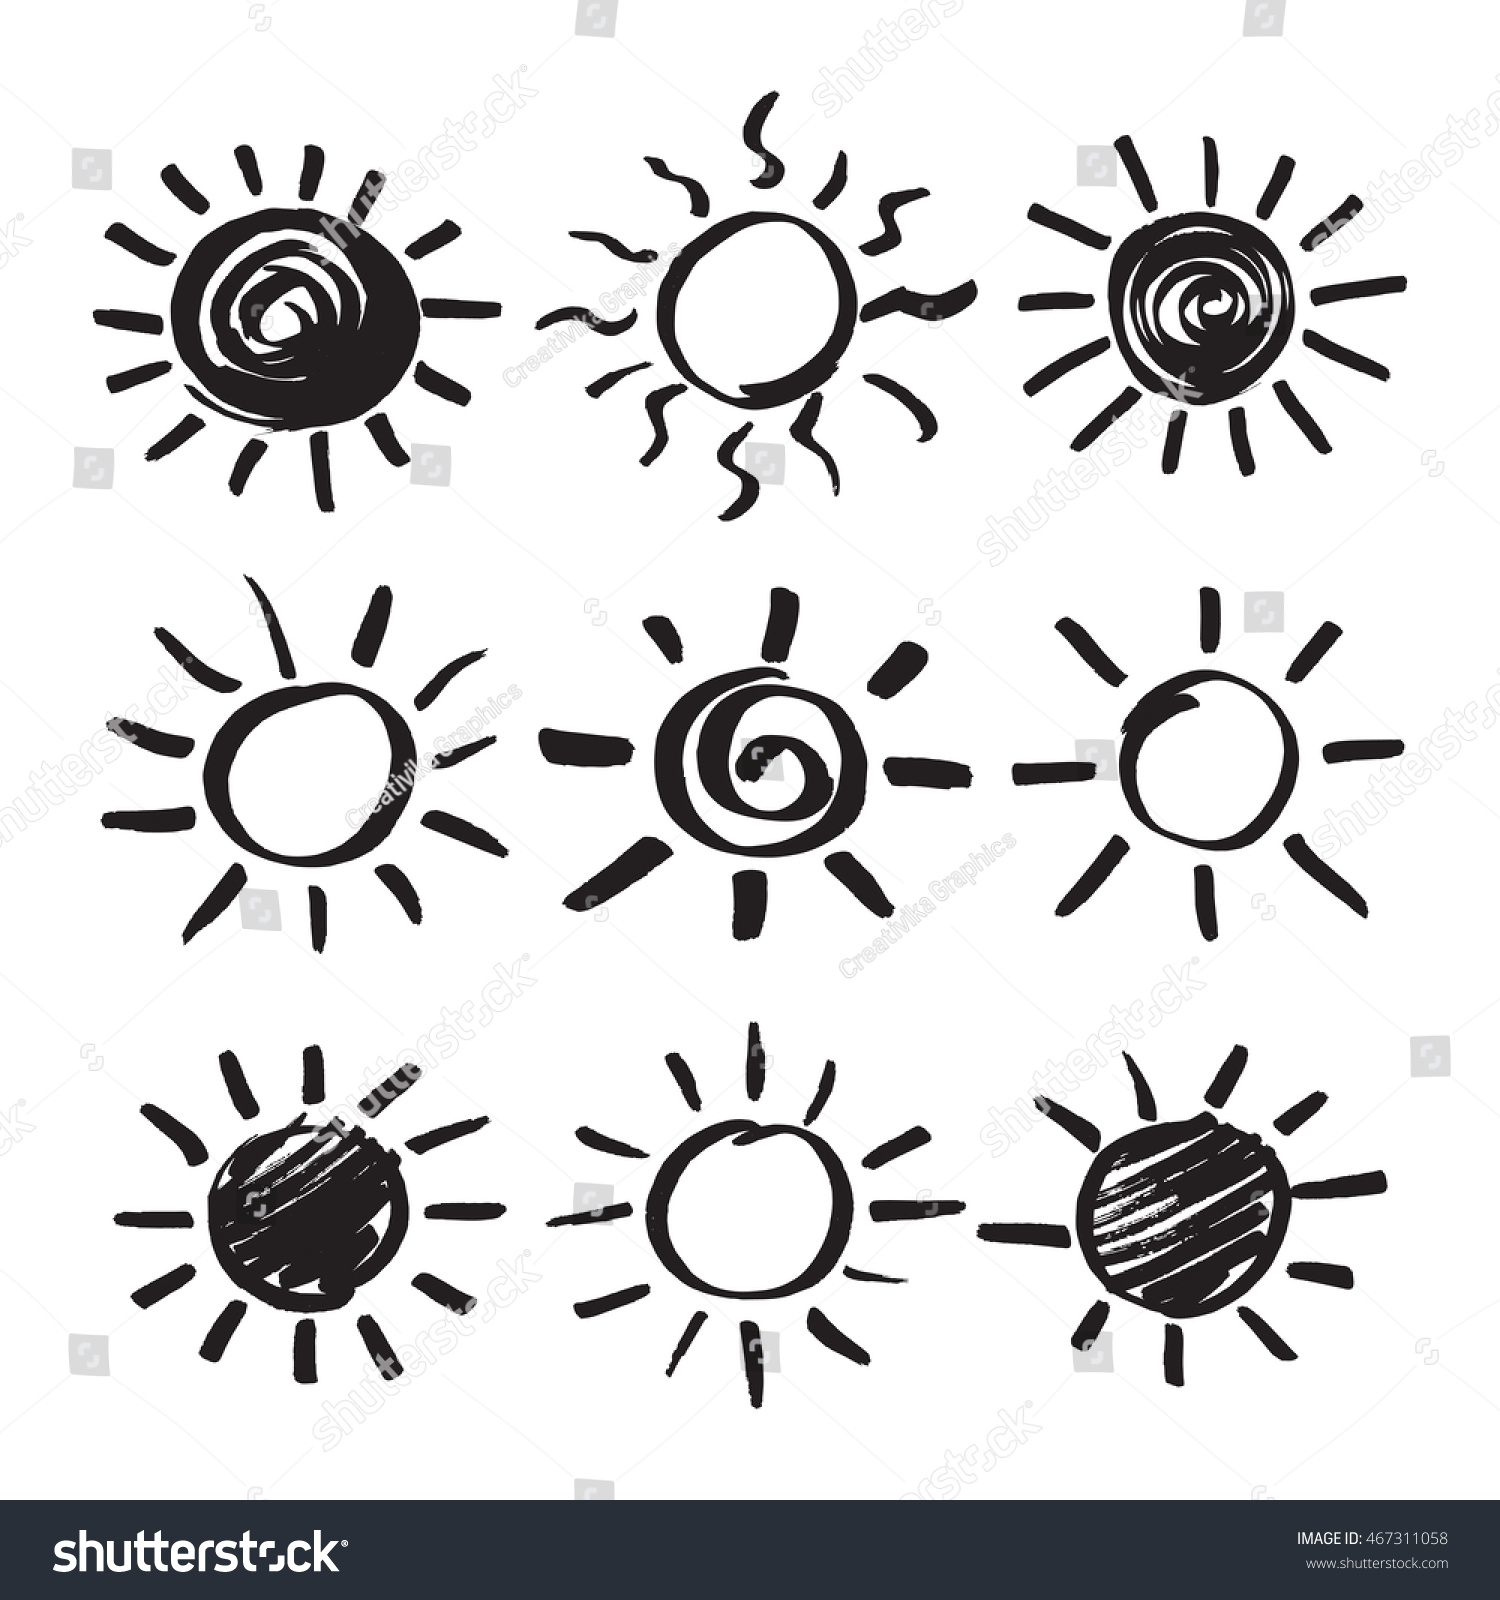 夏の太陽のデザインエレメント 黒いマーカーで描いた日照シルエット記号のセット 白い背景にフェルトペンで太陽光線を落書き ベクター画像eps8イラスト のベクター画像素材 ロイヤリティフリー